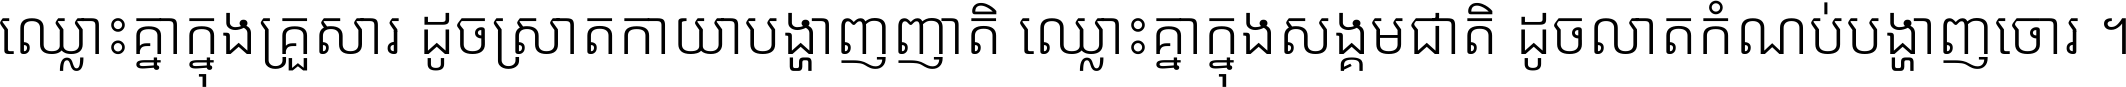 Noto Sans Khmer Light